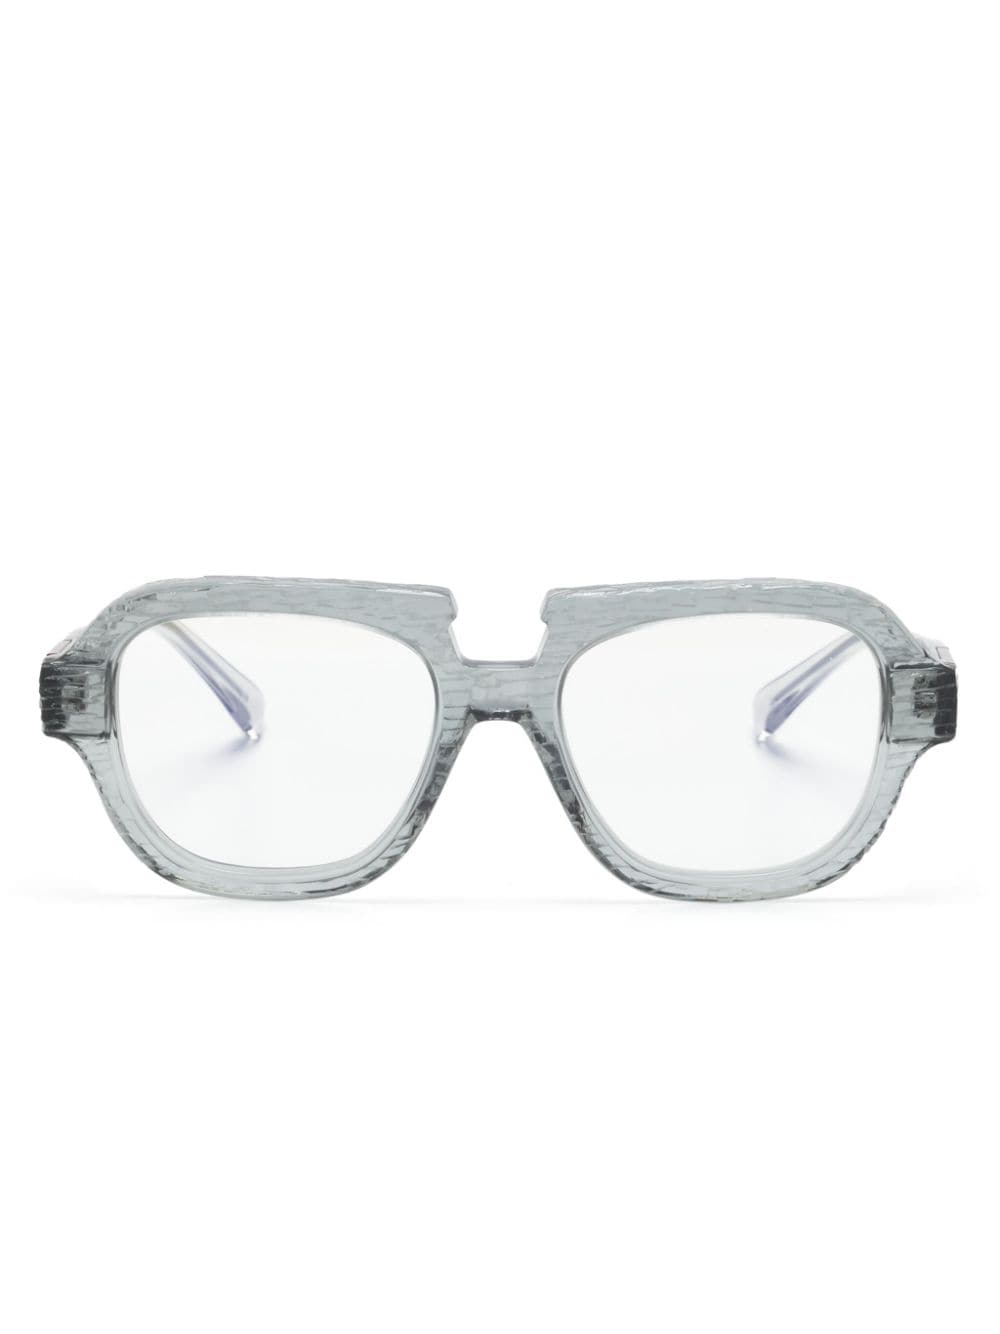 Kuboraum S5 GY square-frame glasses - Grey von Kuboraum